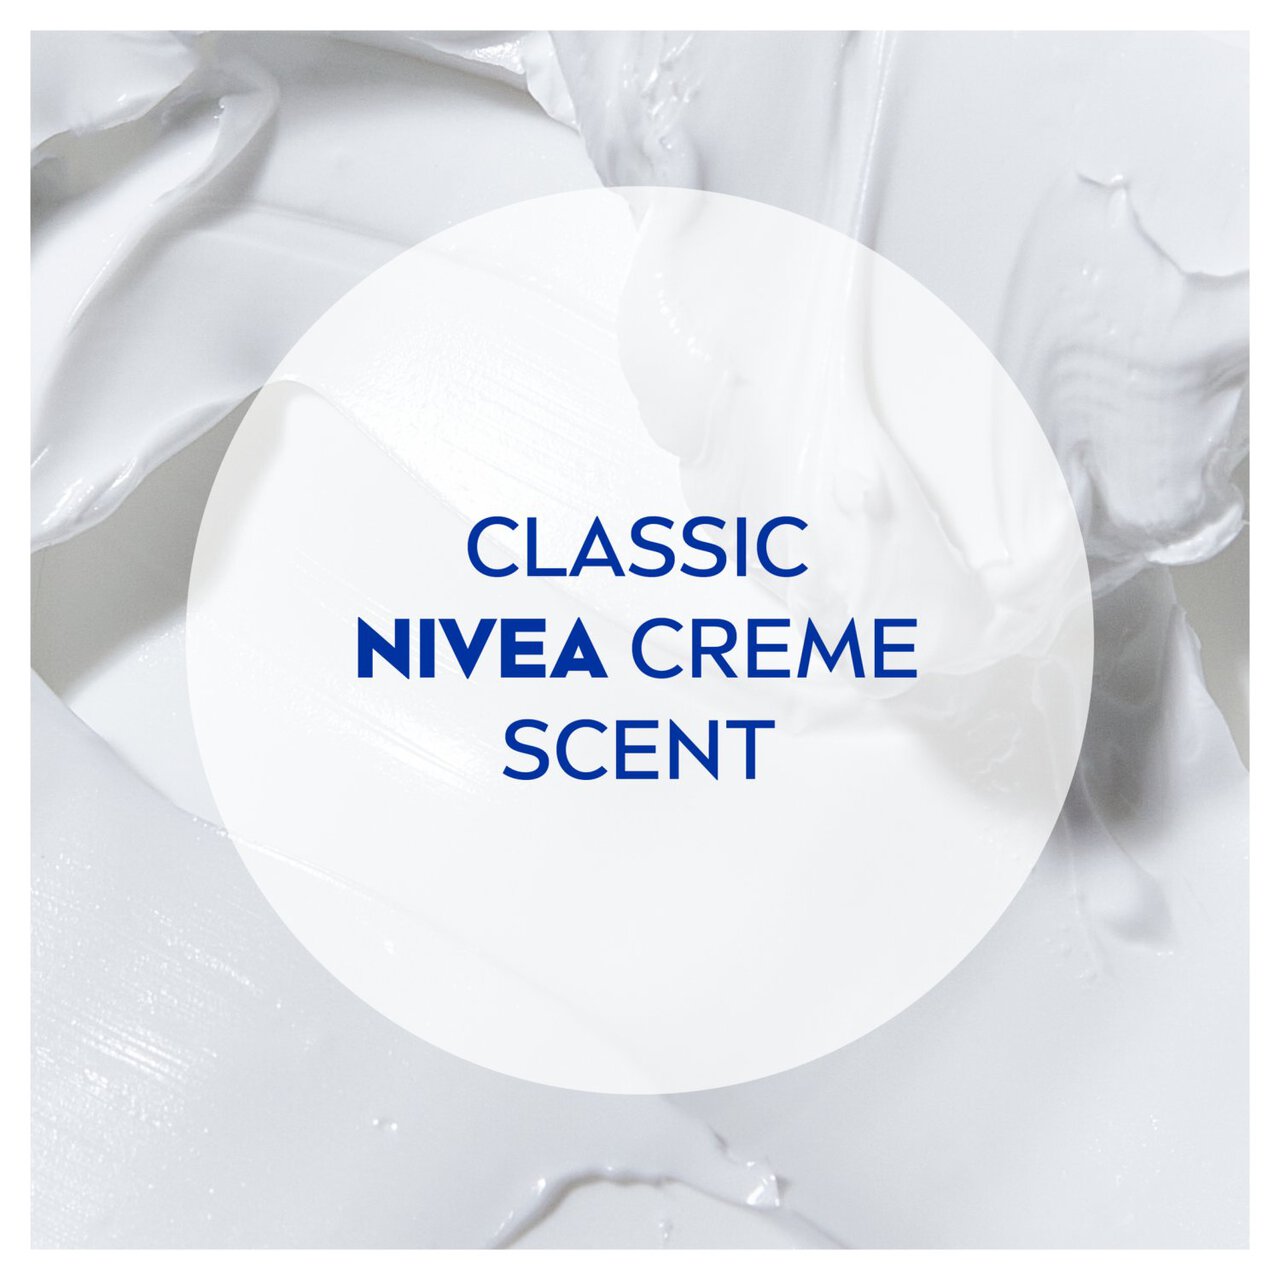 NIVEA Creme Care Shower Cream 250ml